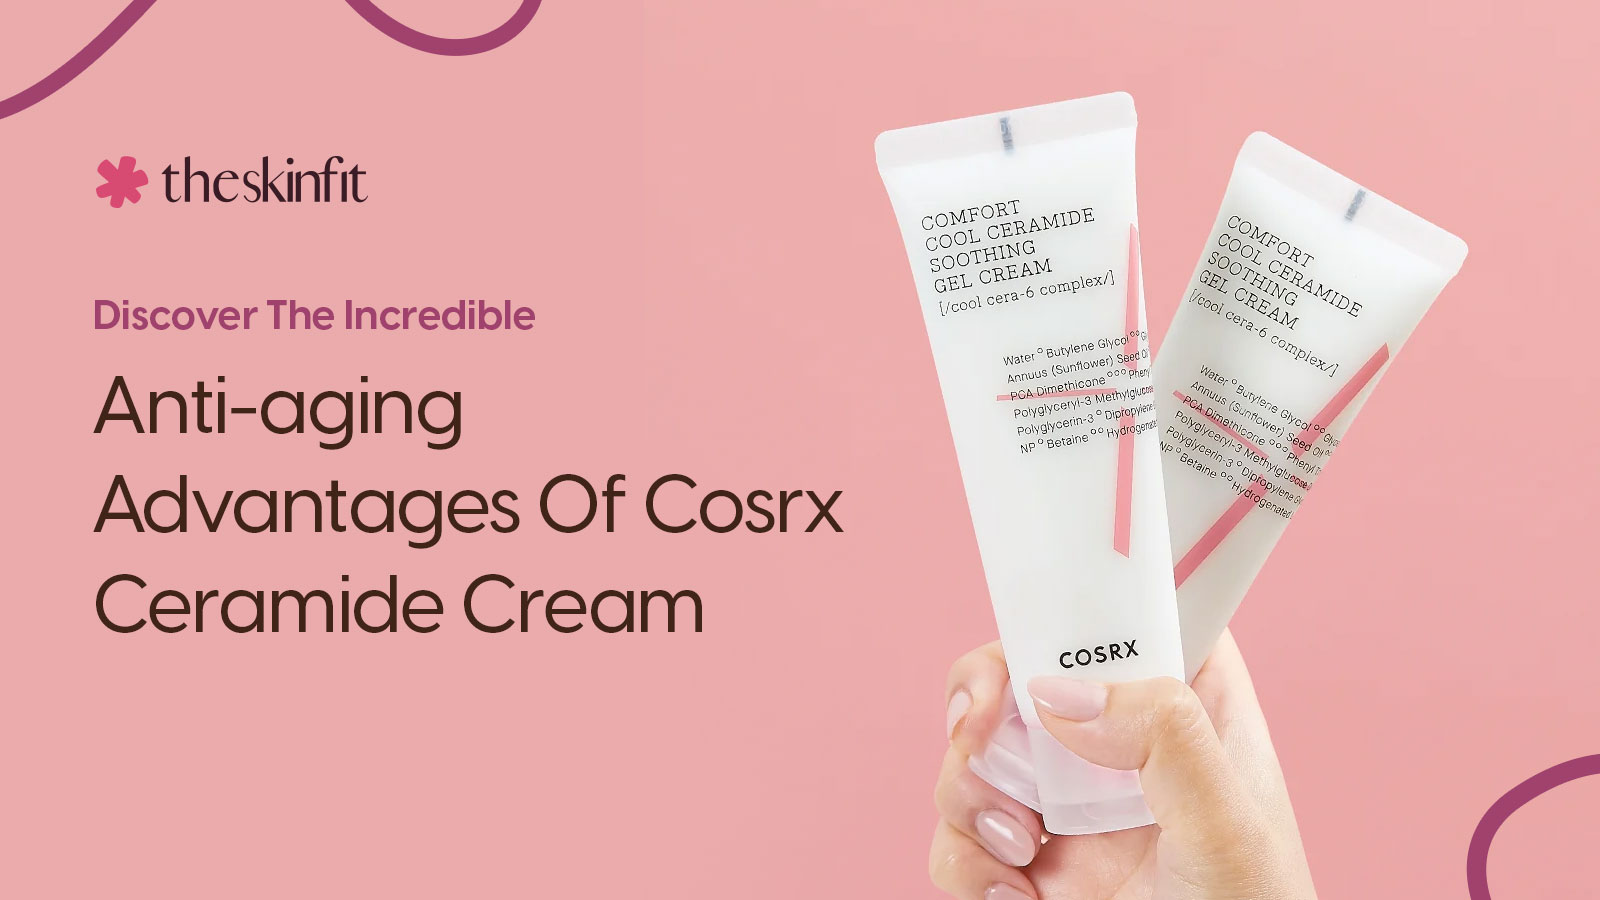 Cosrx Ceramide Cream